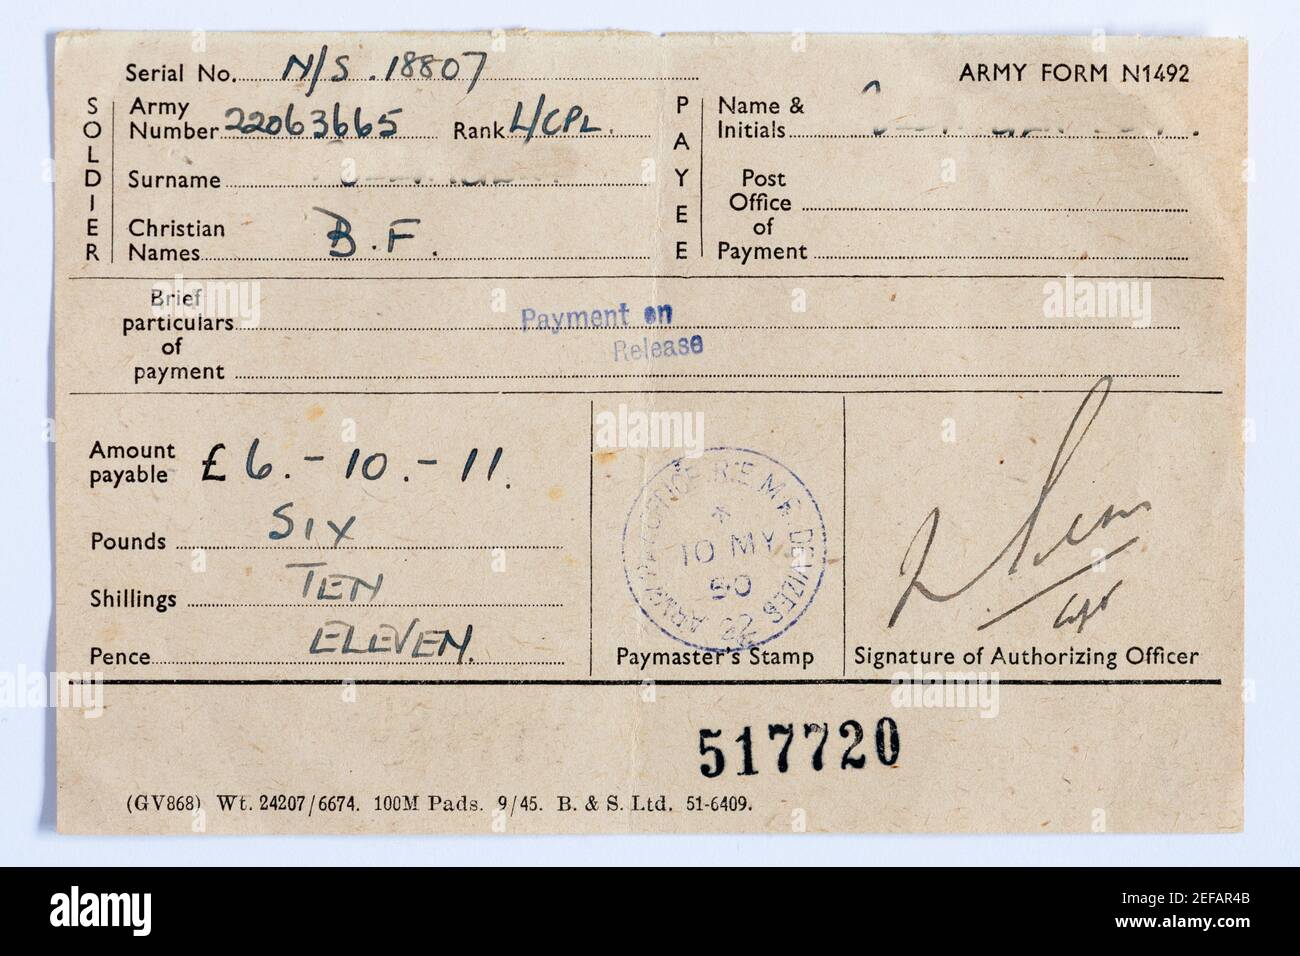 Armee nationalen Dienst Entlastungspapiere aus 1950, Form N1492, Zahlung auf Freilassung, England, Großbritannien Stockfoto